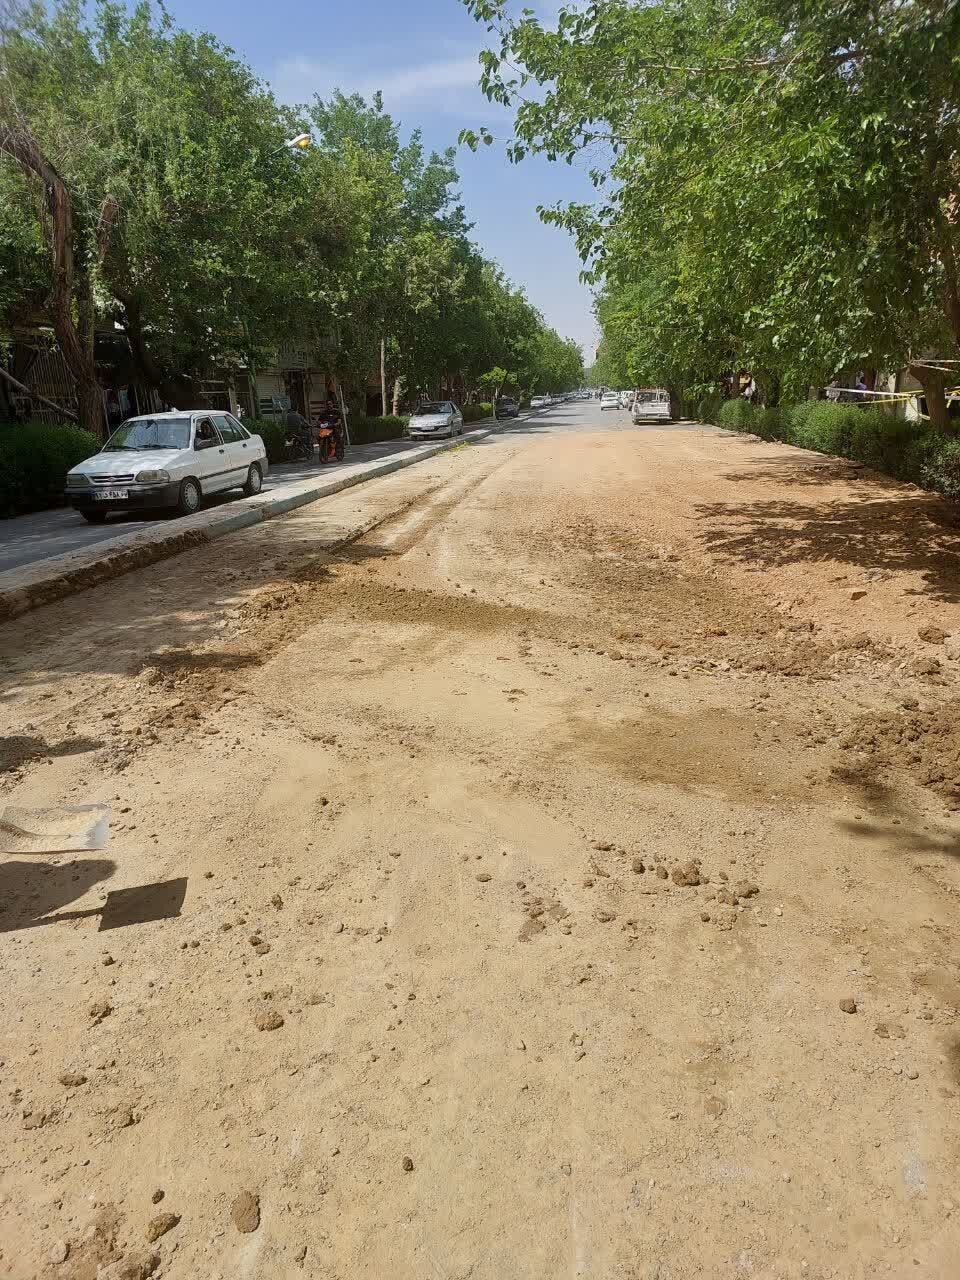 اتمام عملیات بازسازی و تعویض خط لوله در خیابان علامه مجلسی